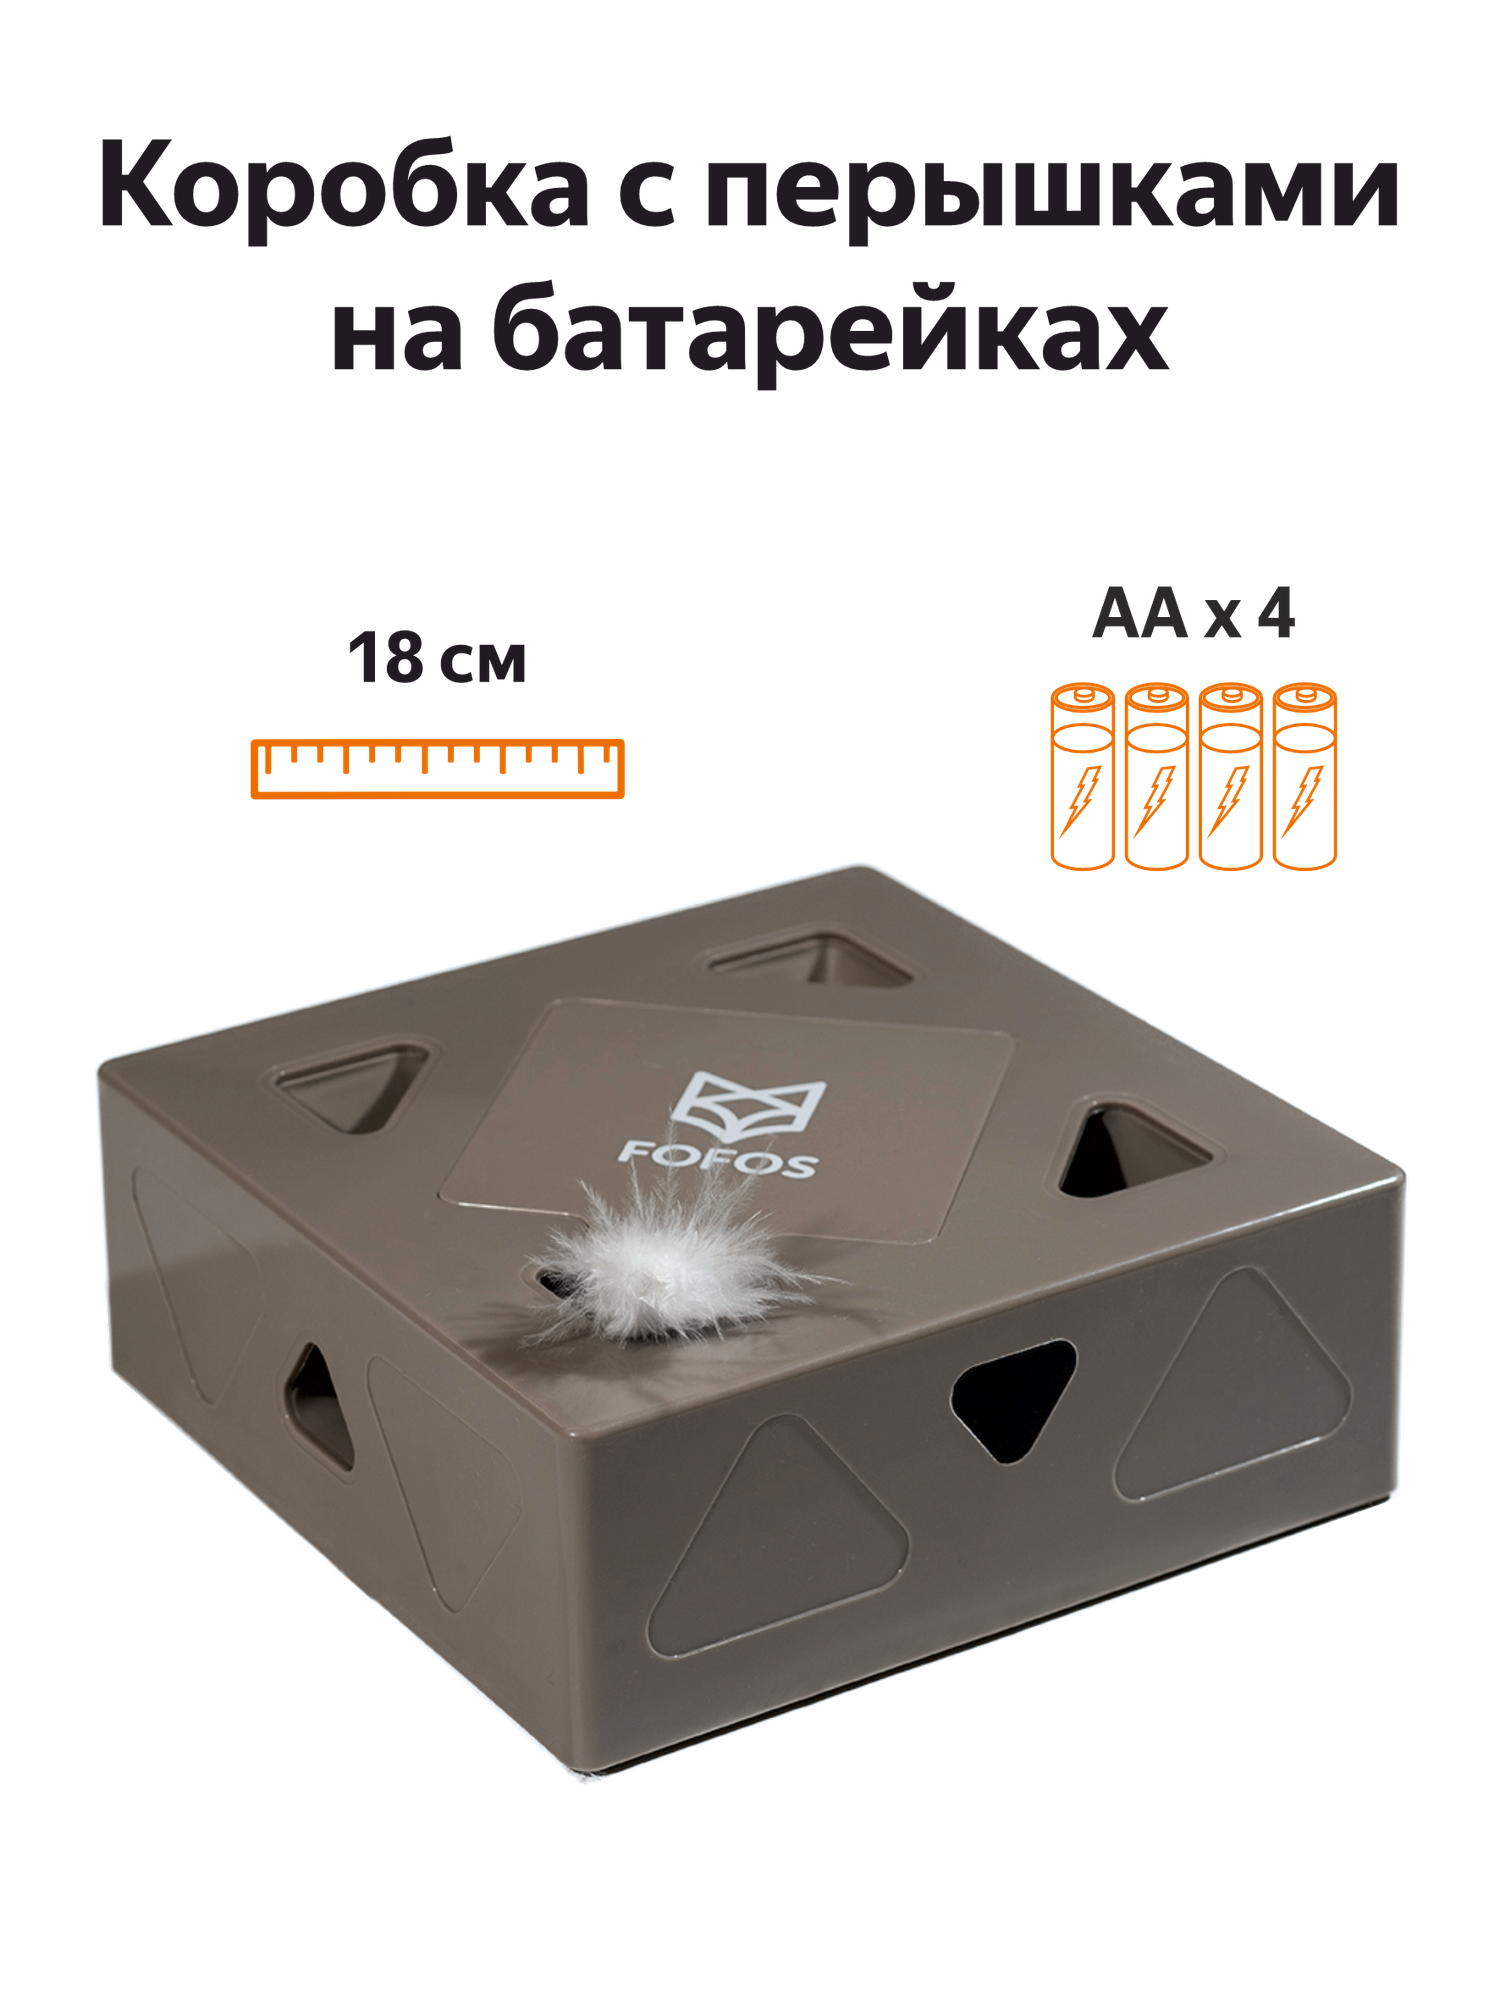 Интерактивная "Коробка с перышком" на батарейках - умная игрушка для кошек и котят / FOFOS ErratiCat